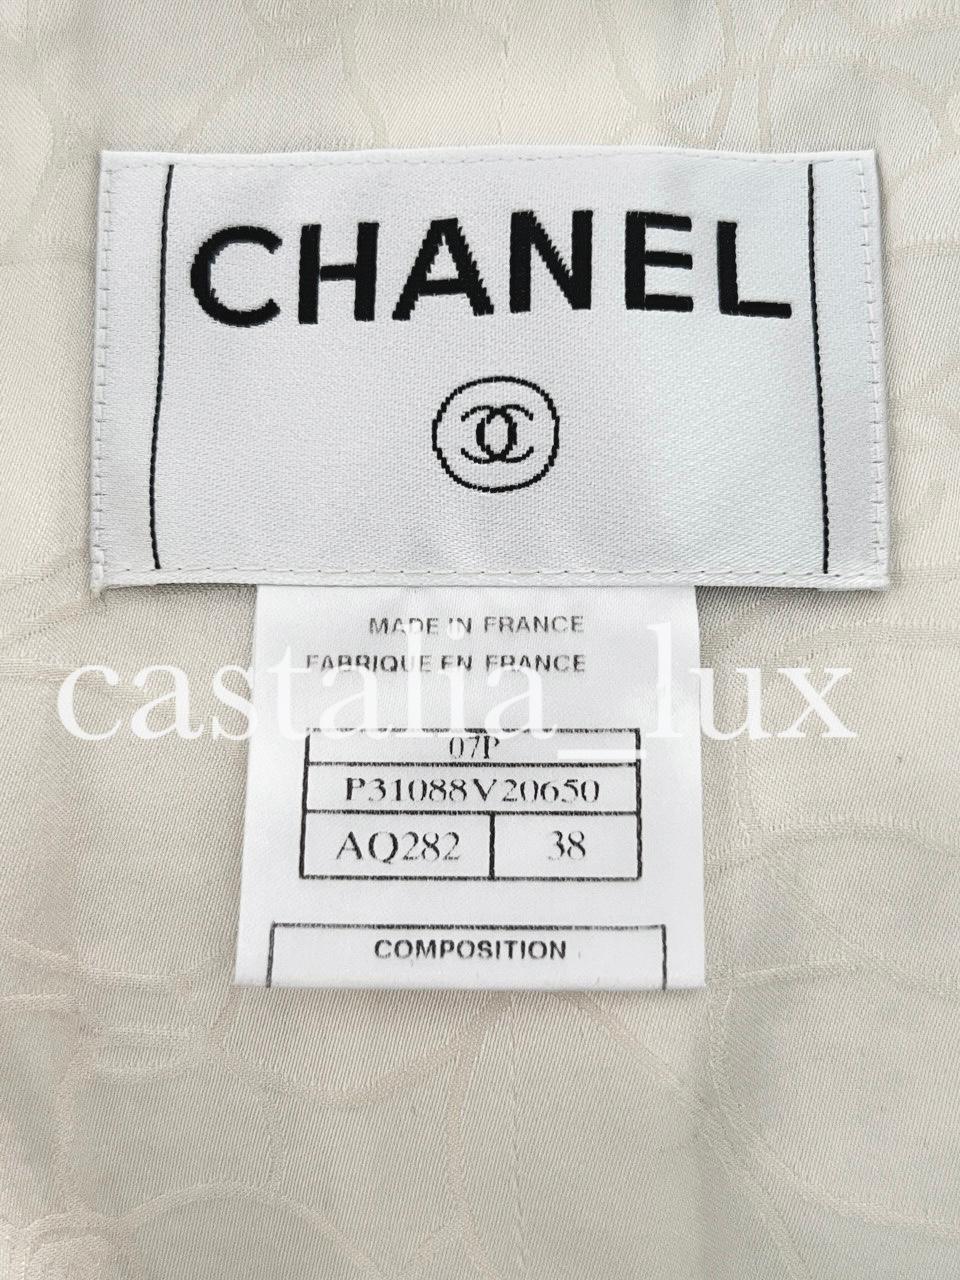 Chanel - Veste de la campagne publicitaire avec chaînes, rarissime 12